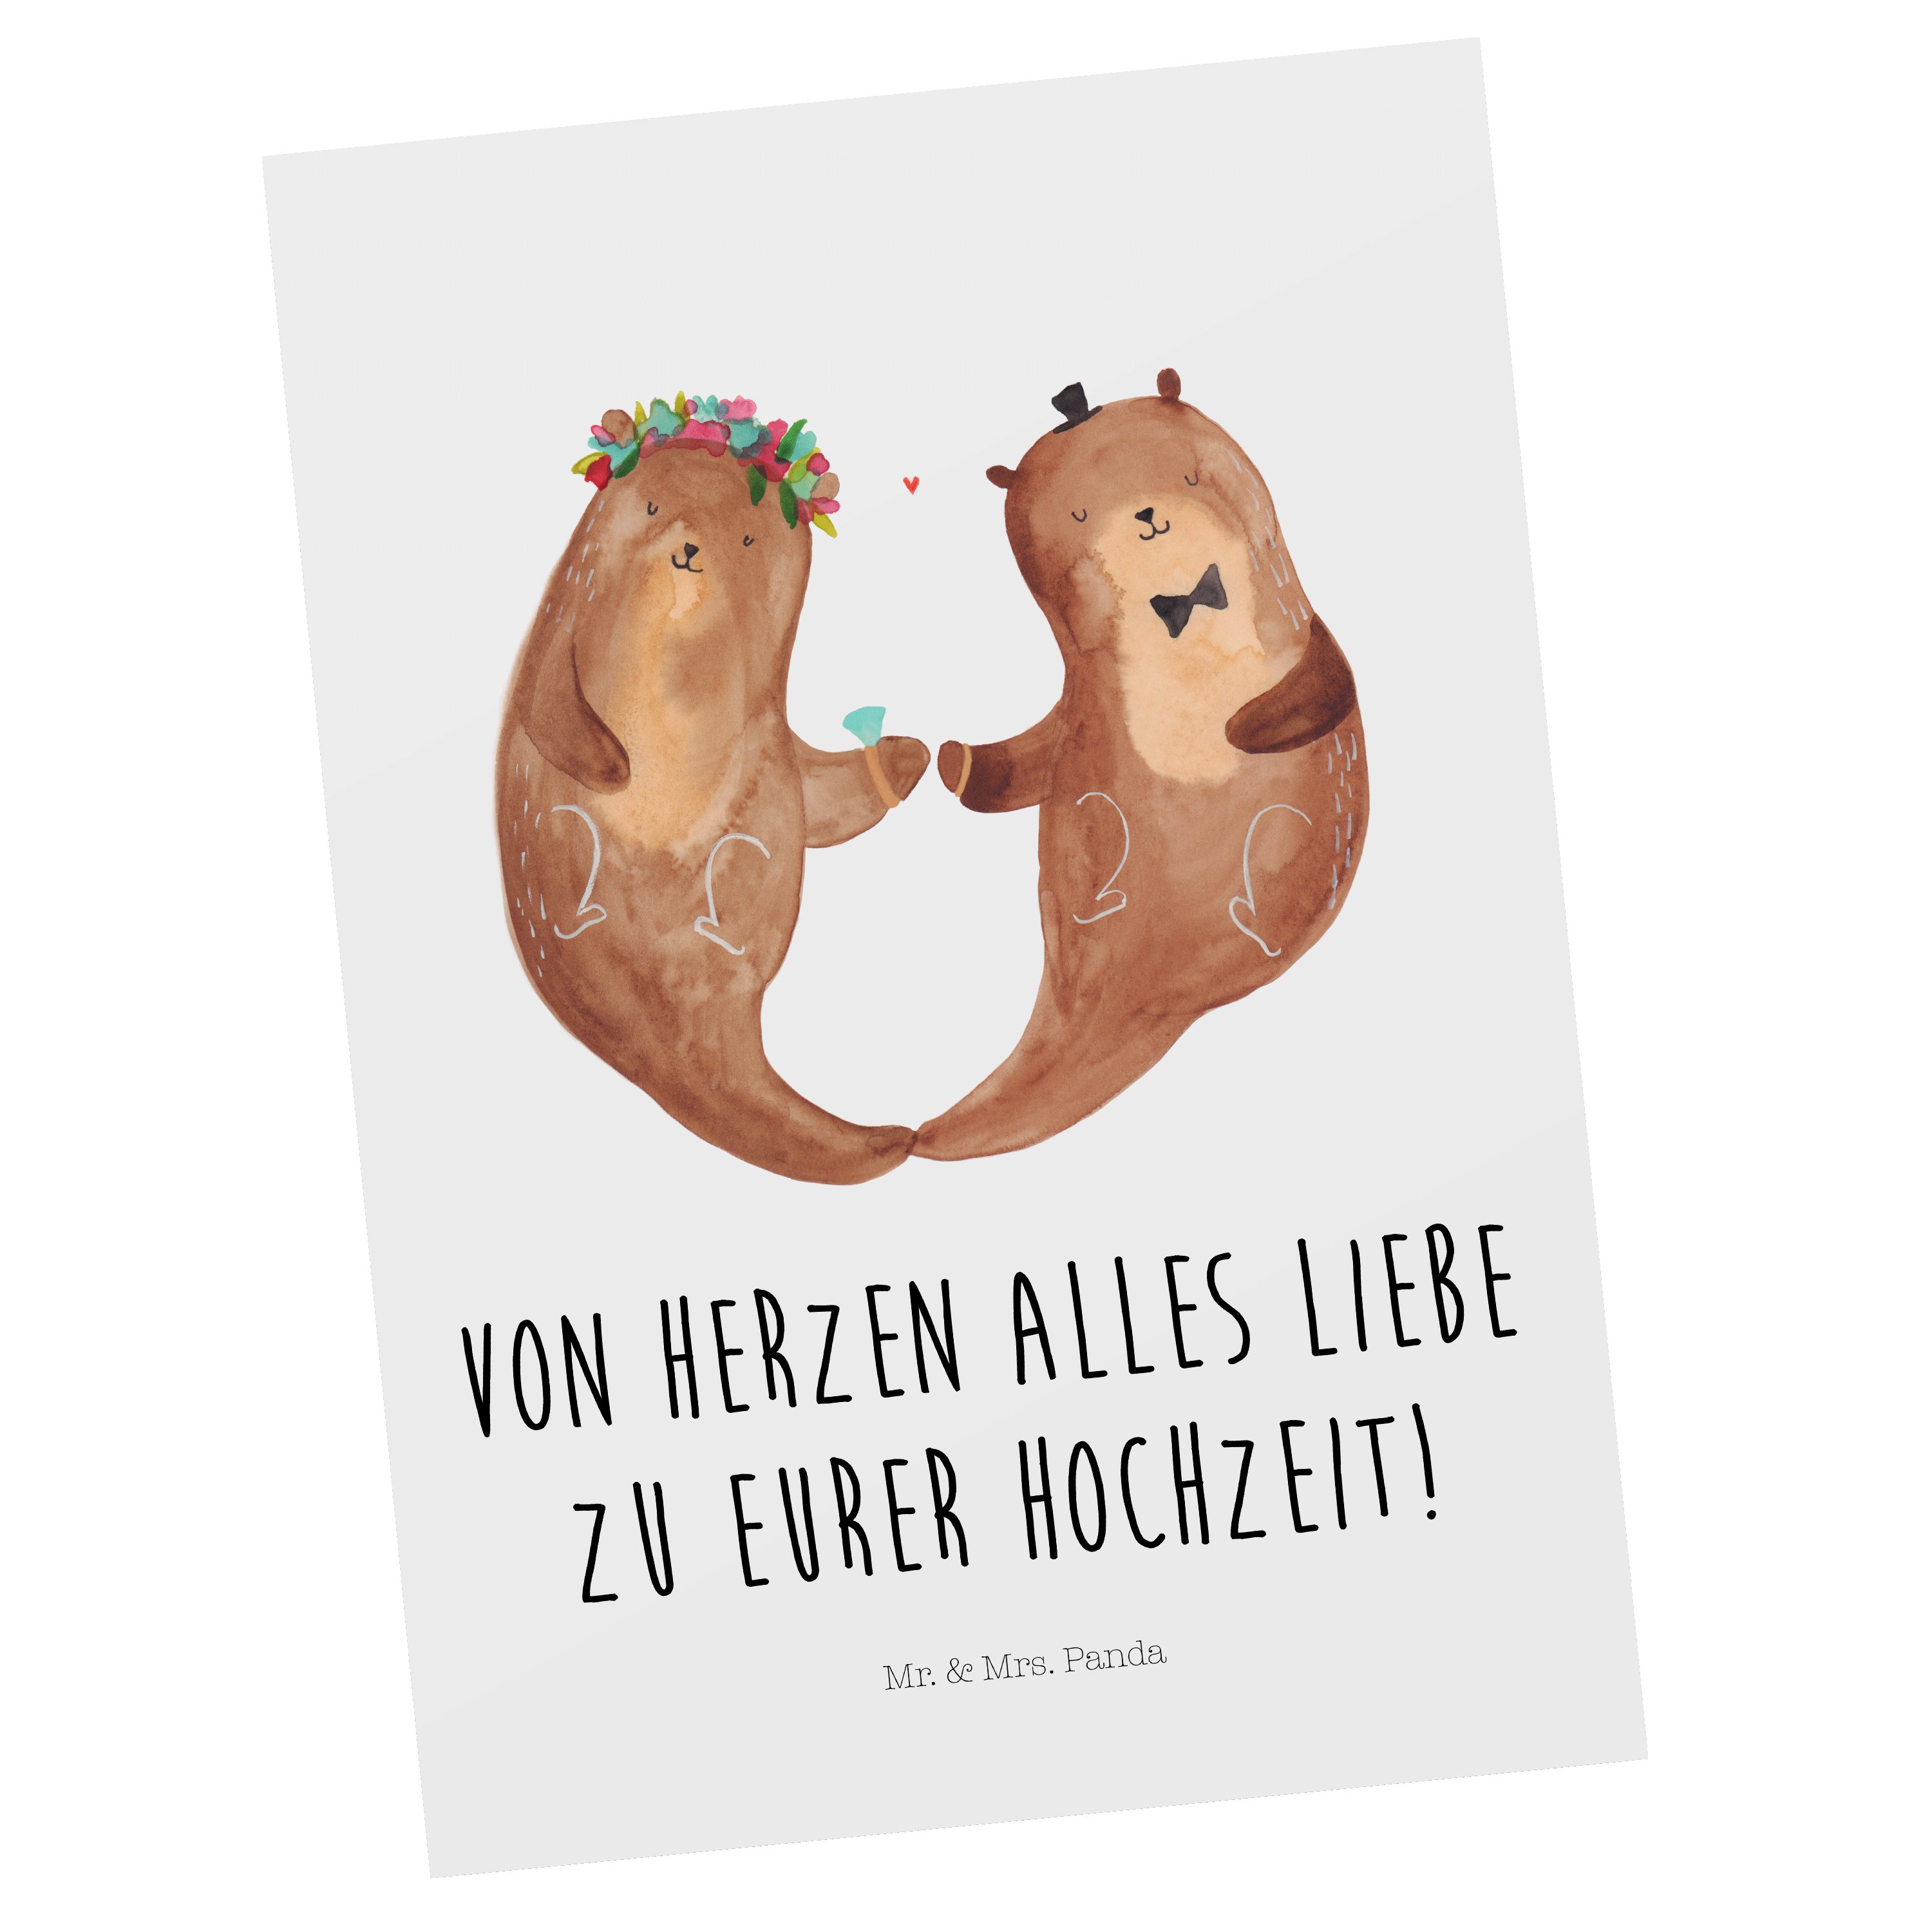 Mr. & Mrs. Panda Postkarte Hochzeitspaar Otter - Weiß - Geschenk, Geschenk zur Hochzeit, Geburts